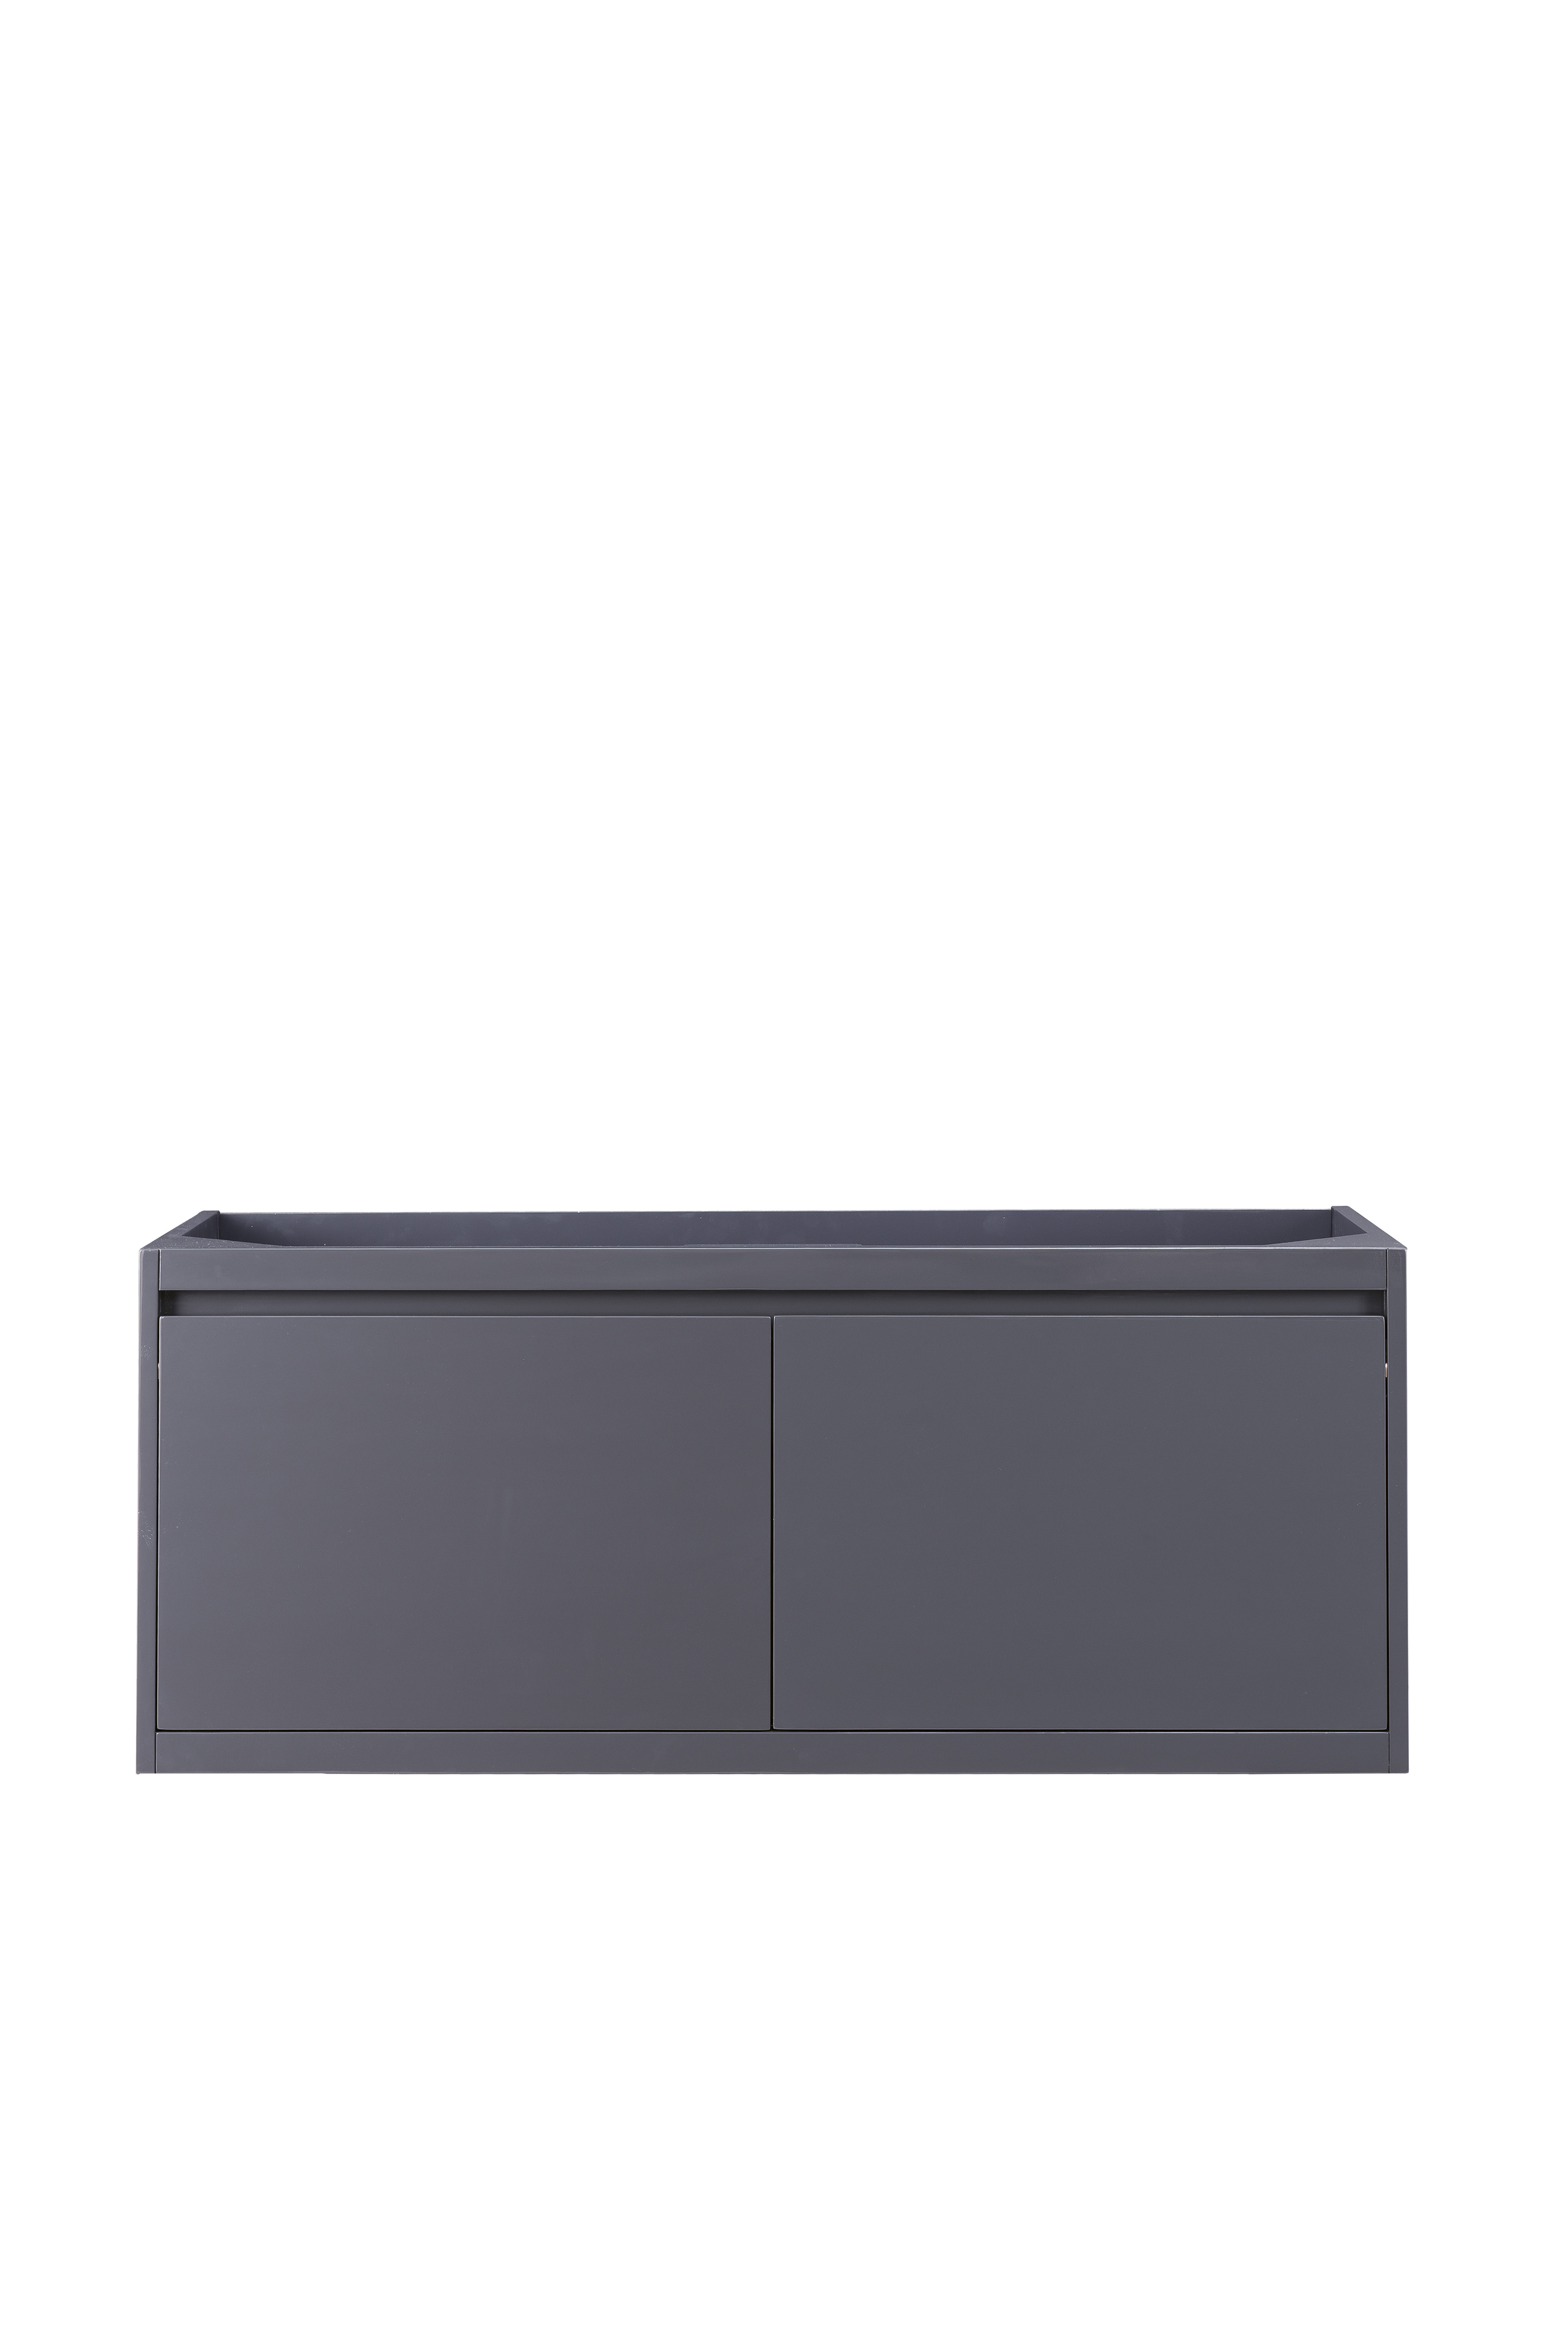 James Martin 801-V47.3-MGG Milan 47.3" Single Vanity Cabinet, Modern Grey Glossy - Click Image to Close